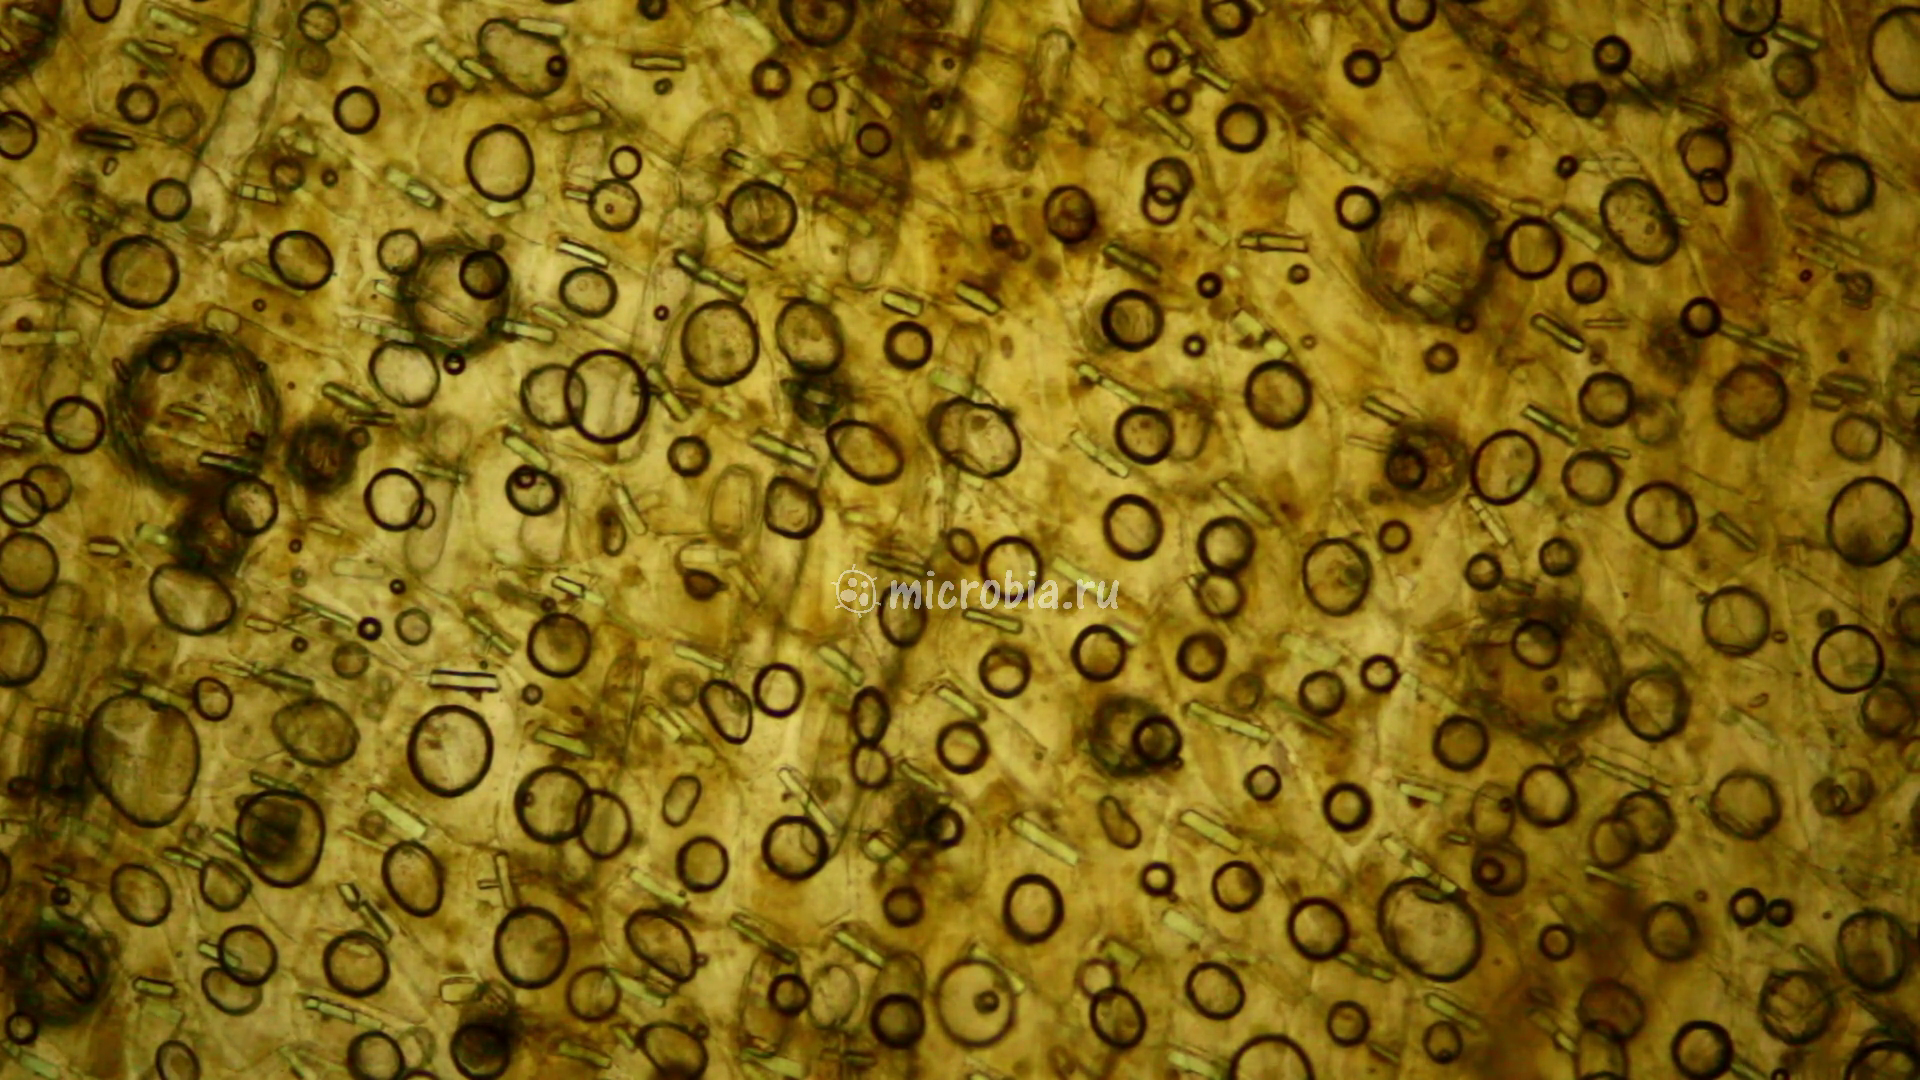 кристаллы в клетках шелухи лука под микроскопом